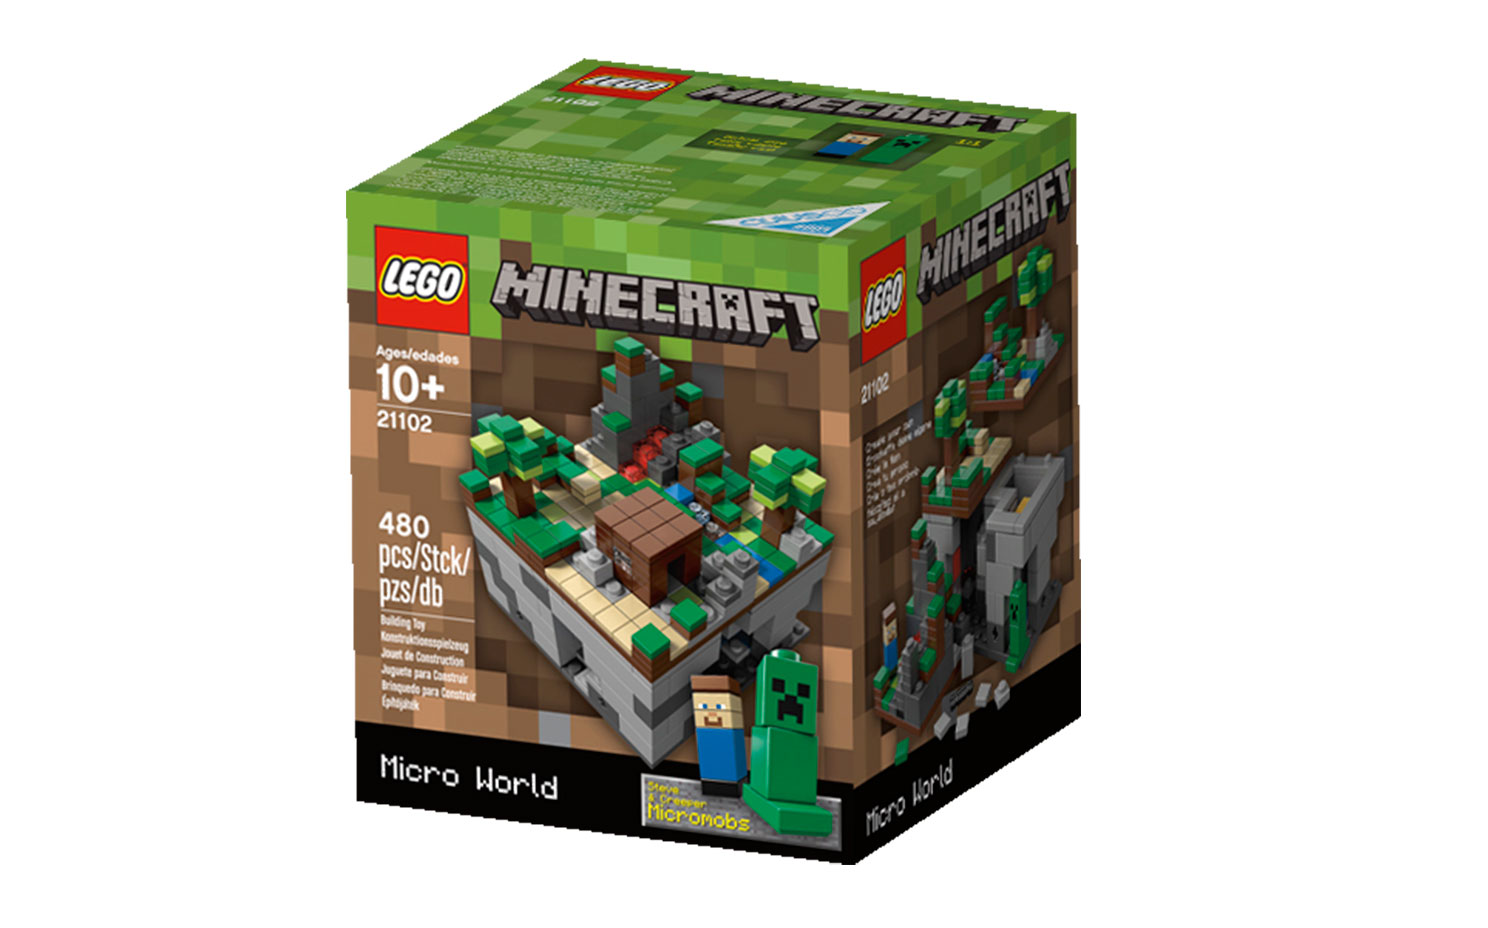 Palacio de los niños seguramente triunfante Micro World - The Forest 21102 - LEGO® Minecraft™ Sets - LEGO.com for kids